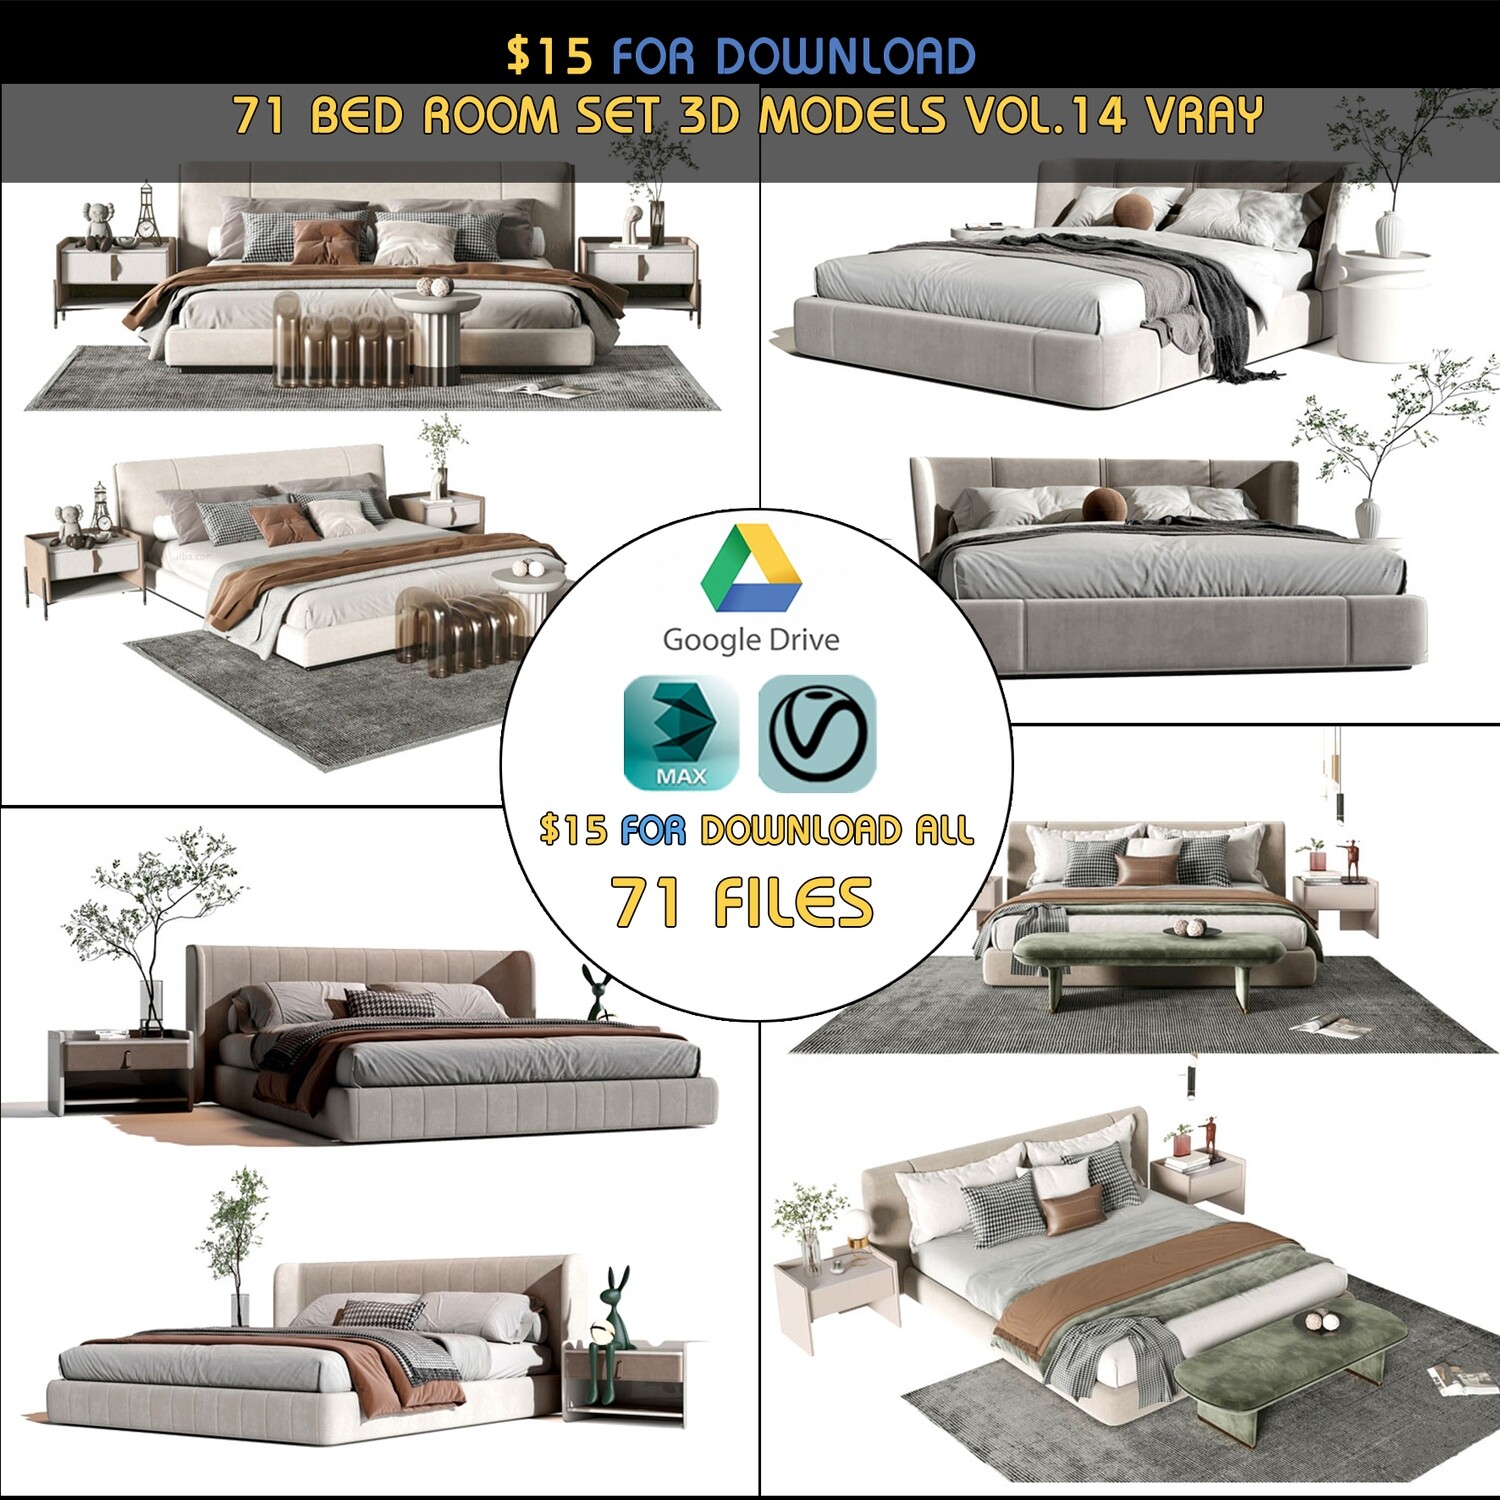 71 BED ROOM SET 3D MODELS VOL 14 - VRAY